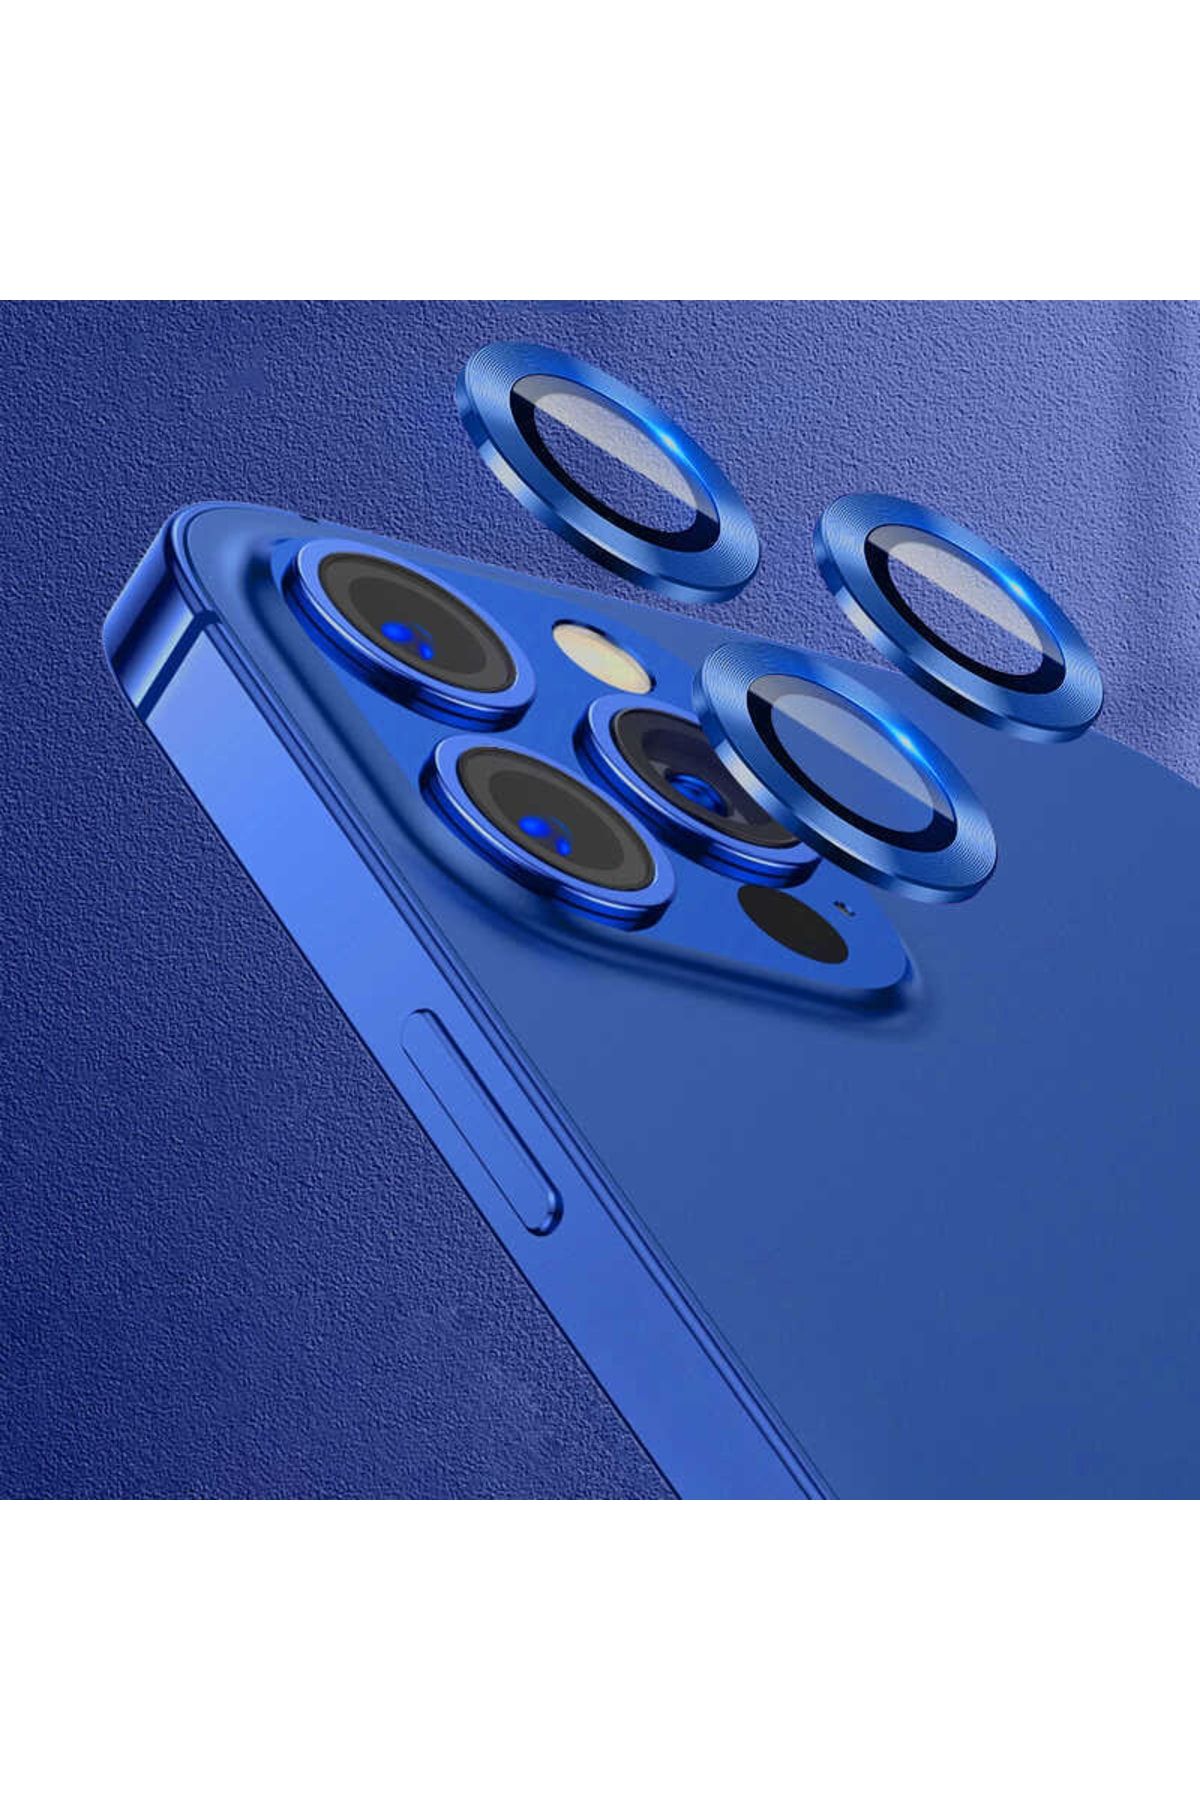 UnDePlus Iphone 12 Pro Max Uyumlu Kamera Lens Koruyucu Çerçeveli Koruyucu Cl-07